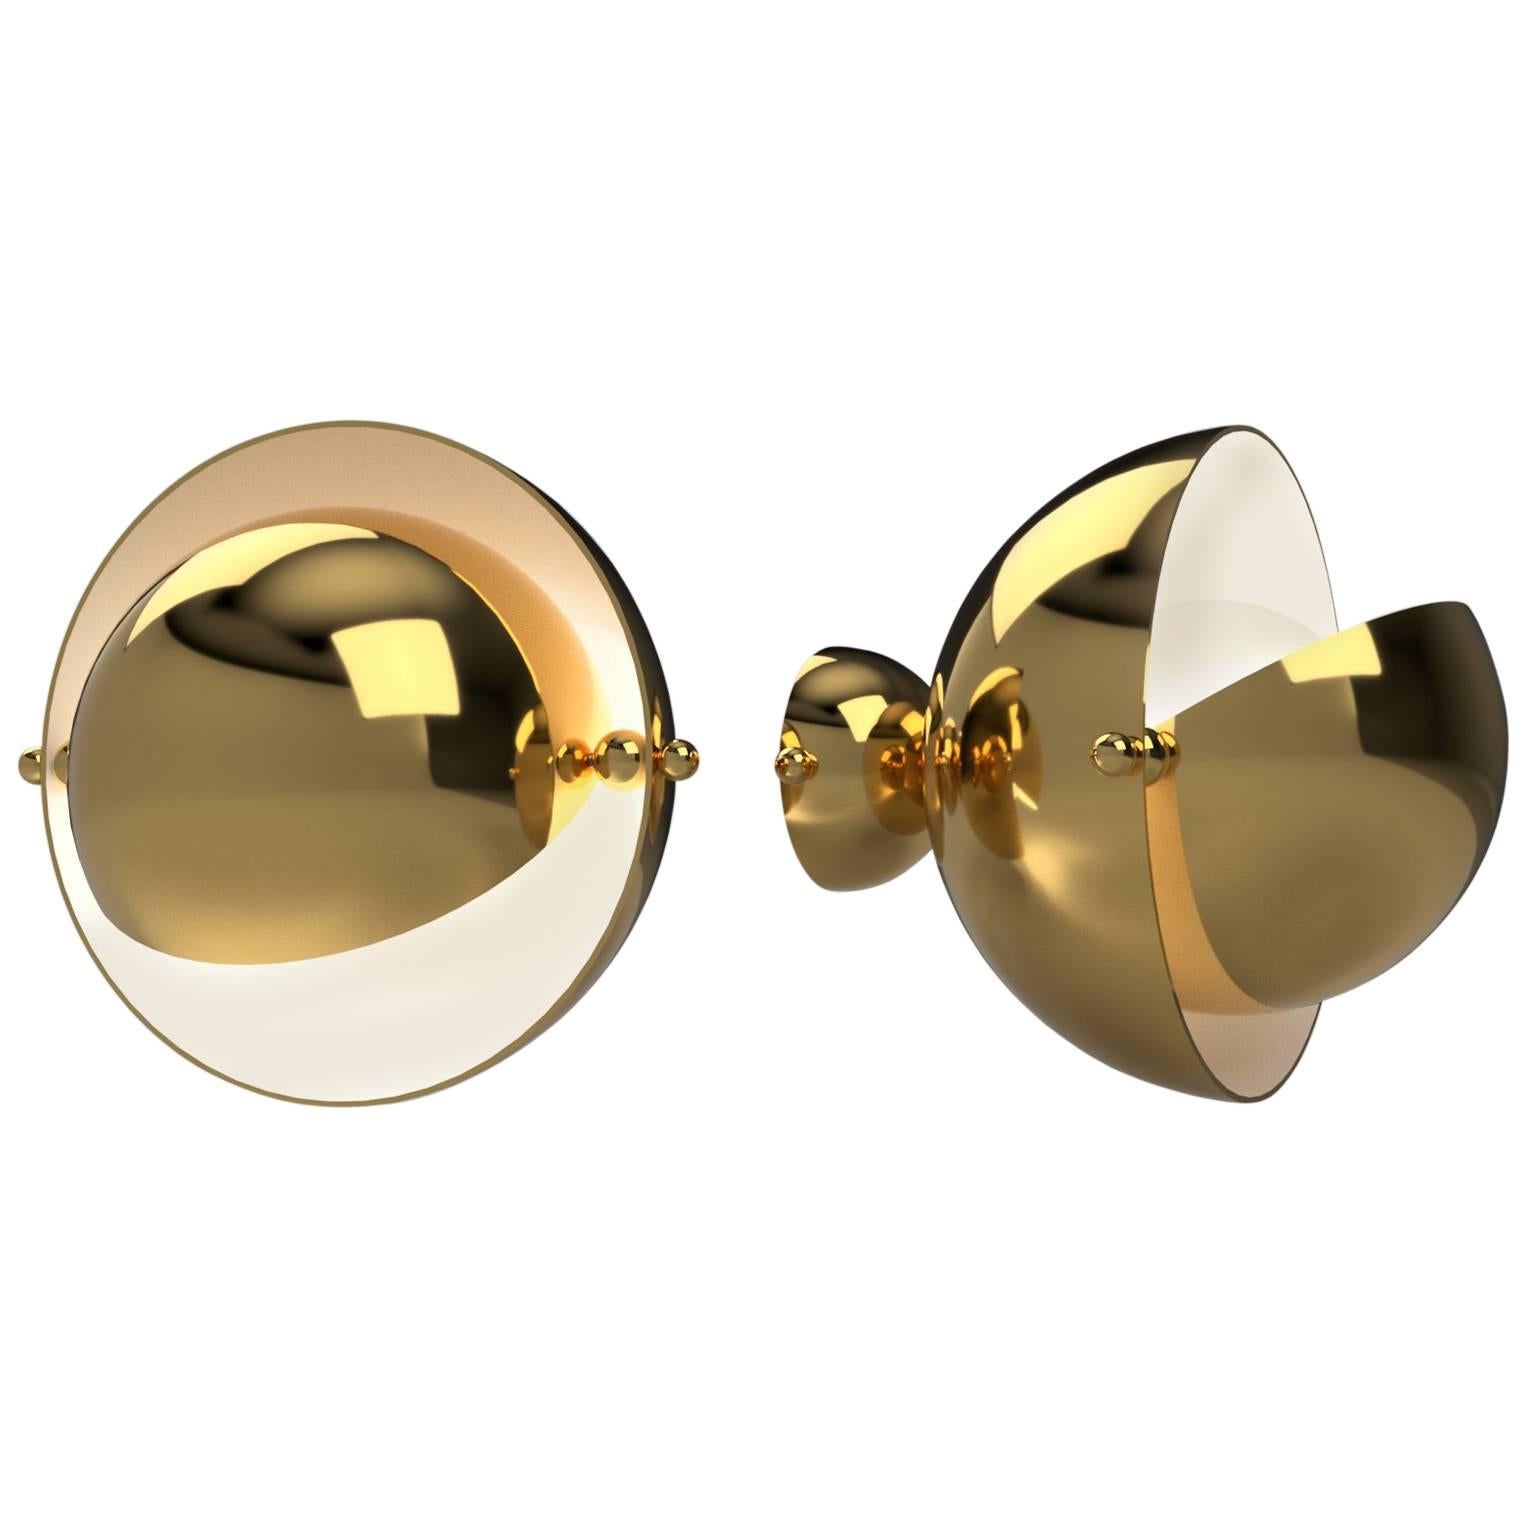 Pair of Spherical Brass Sconces, VINGTIEME Edition, Paris